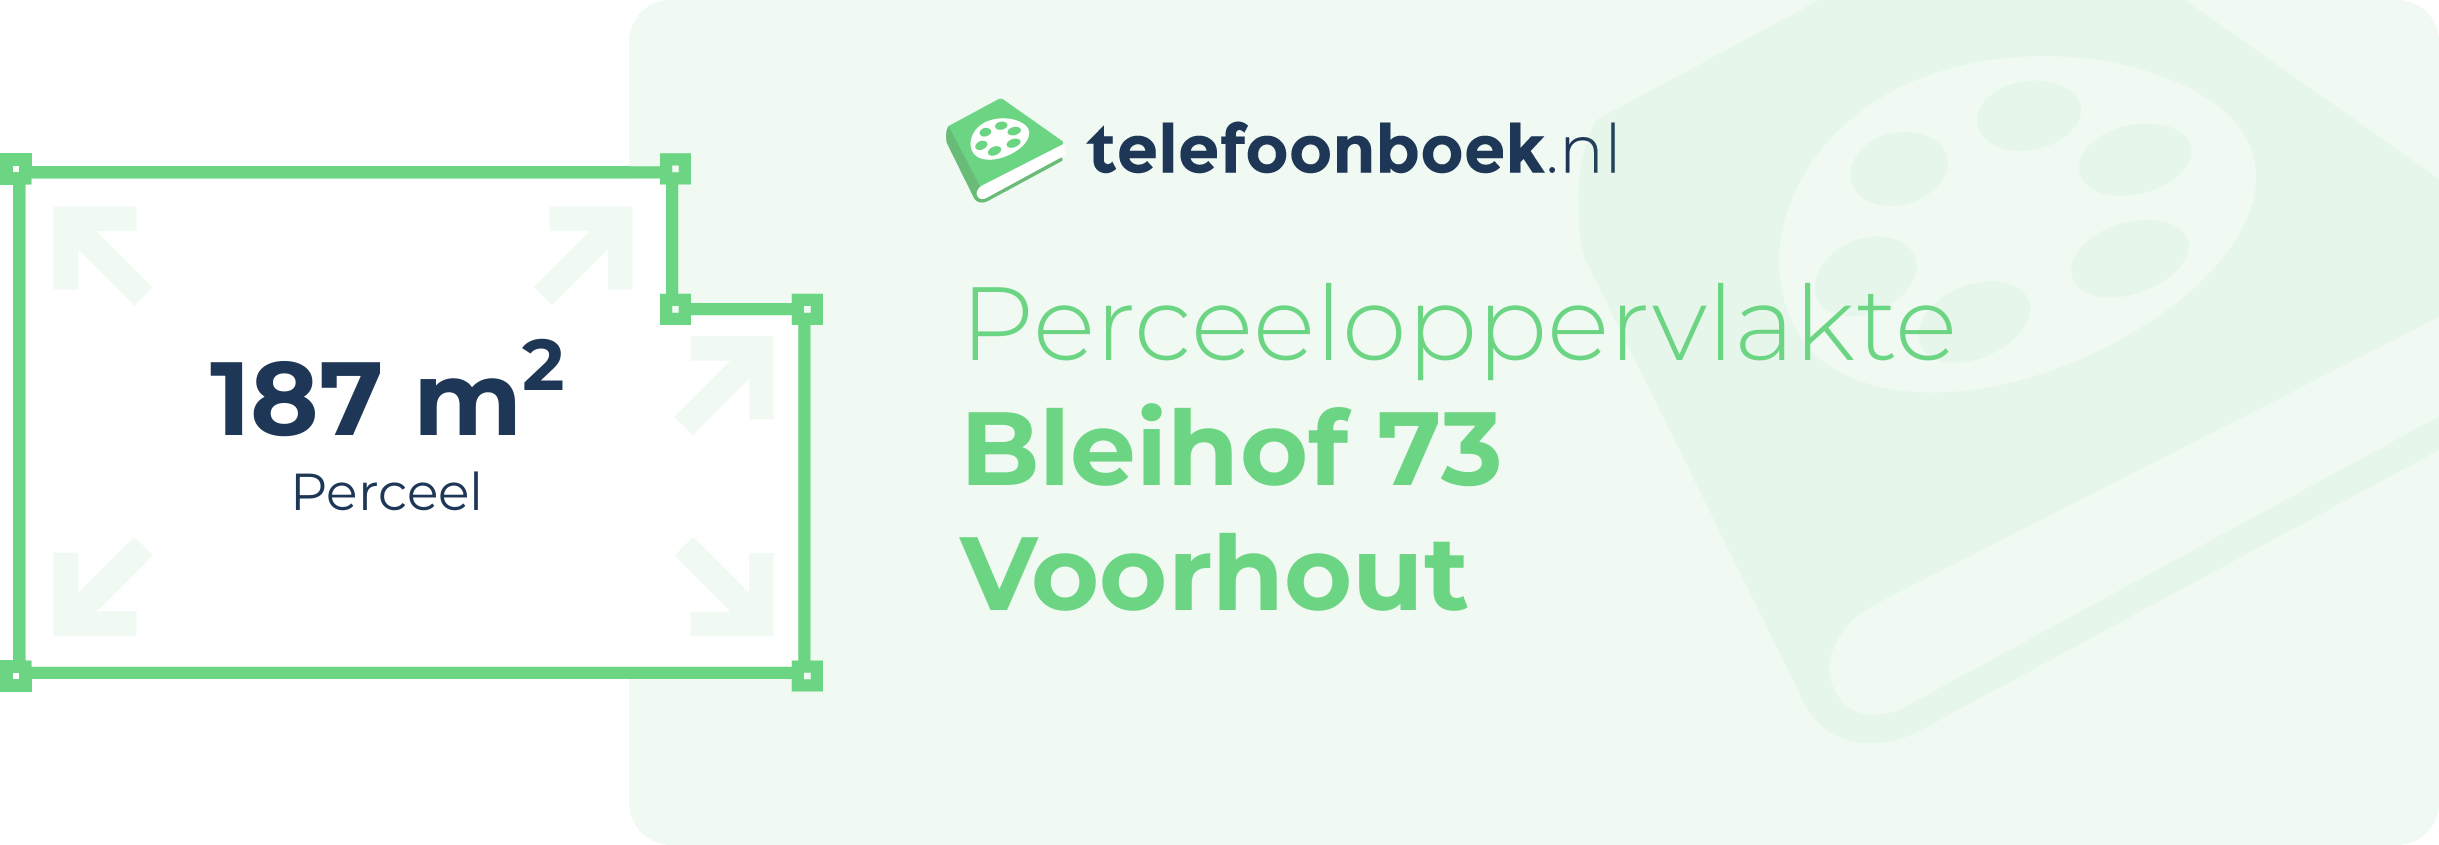 Perceeloppervlakte Bleihof 73 Voorhout